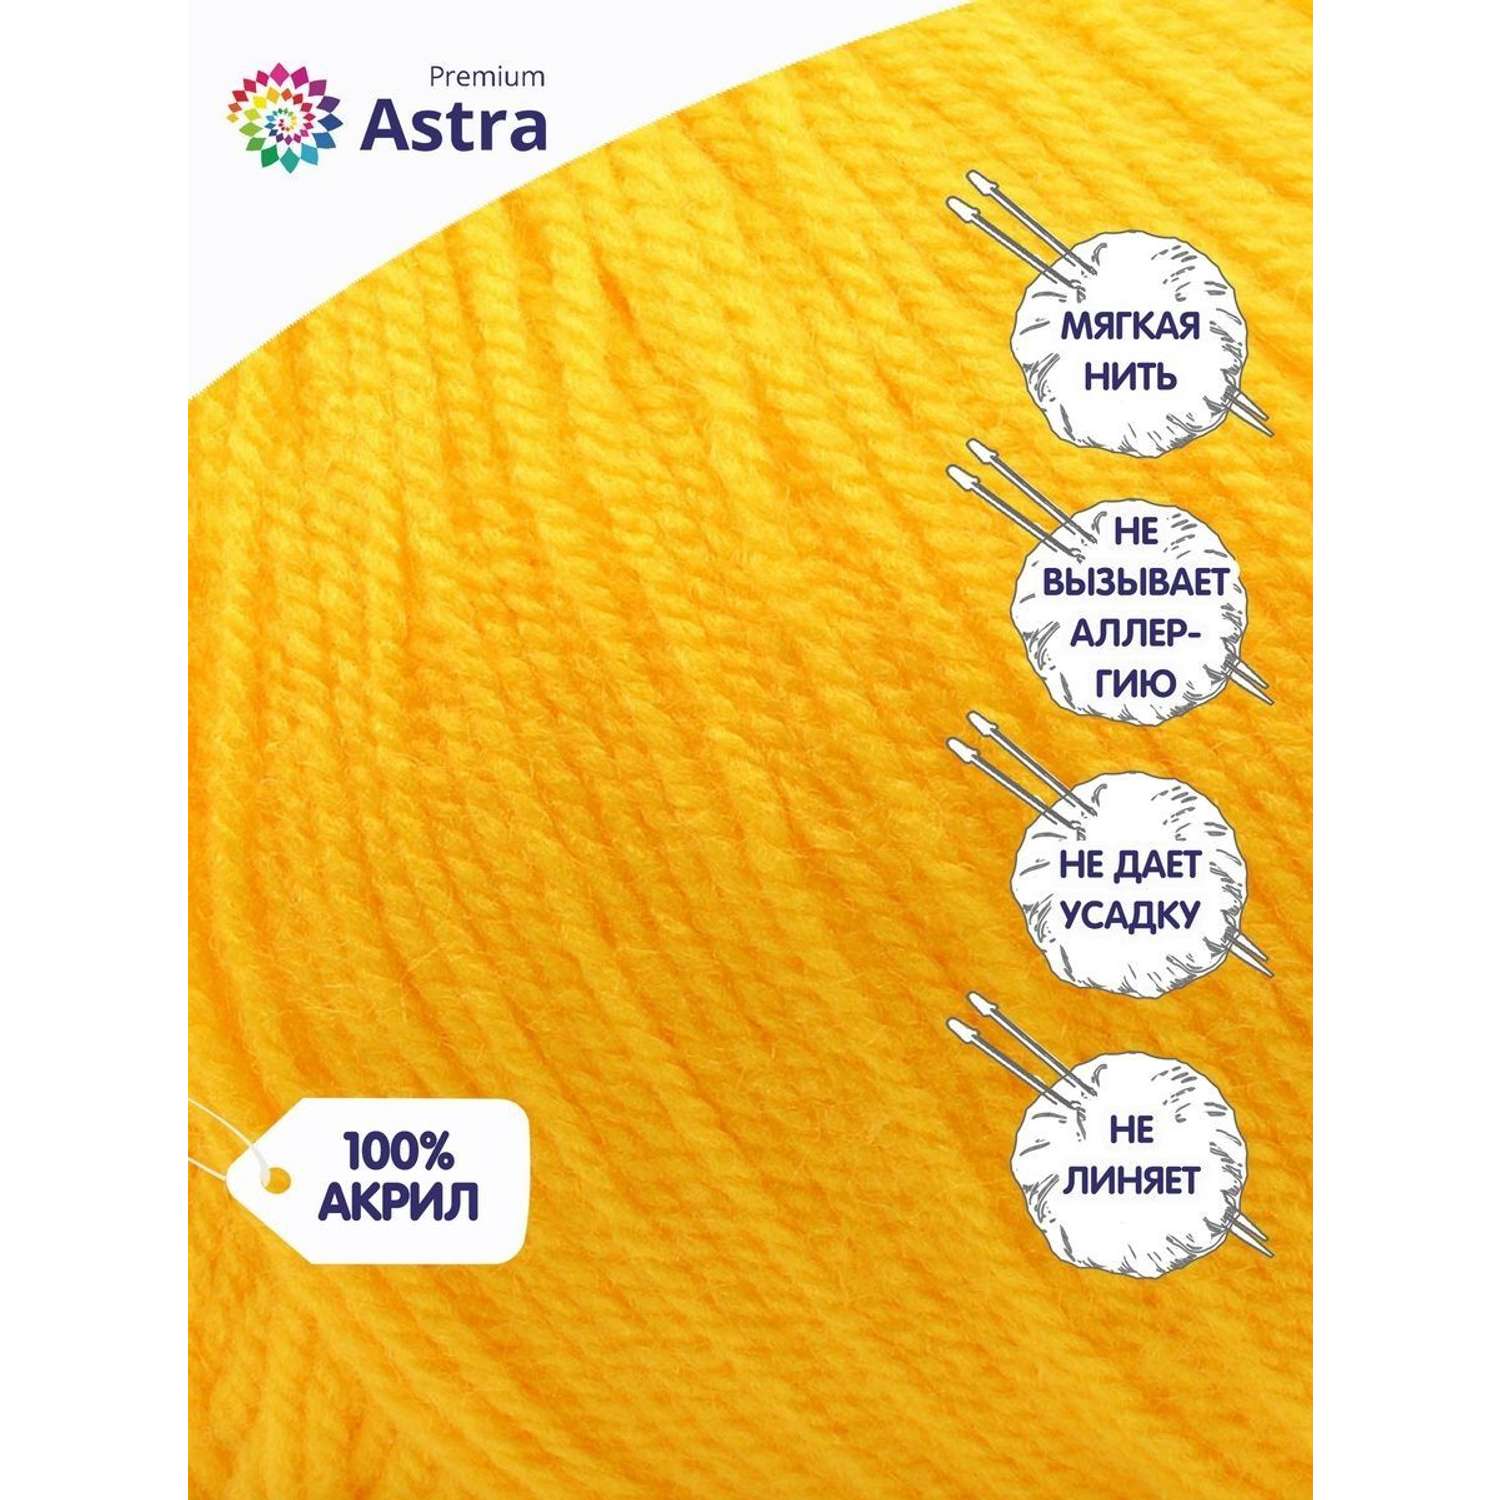 Пряжа для вязания Astra Premium амигуруми акрил для мягких игрушек 50 гр 175 м 104 желтый 6 мотков - фото 2